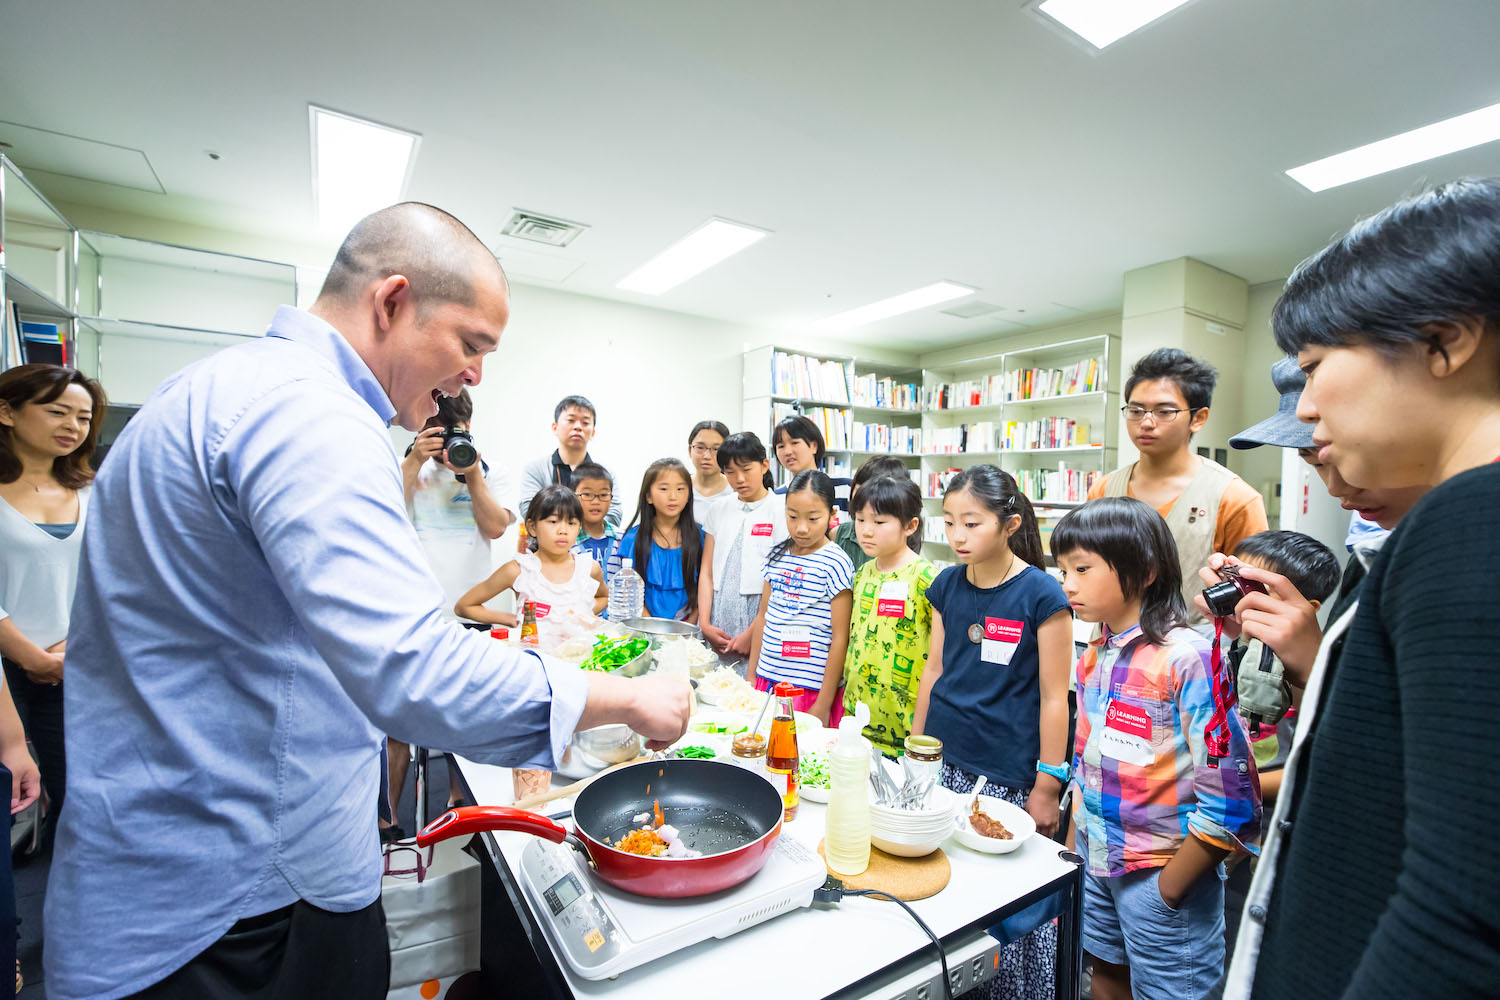 「サンシャワー展」の際に開催されたキッズ・プログラム「いろんな世代の人と一緒にアーティストに出会う」の様子です。タイのアーティスト、ドゥサディー・ハンタクーンさんがフライパンで料理をしている様子を子供たちが見つめています